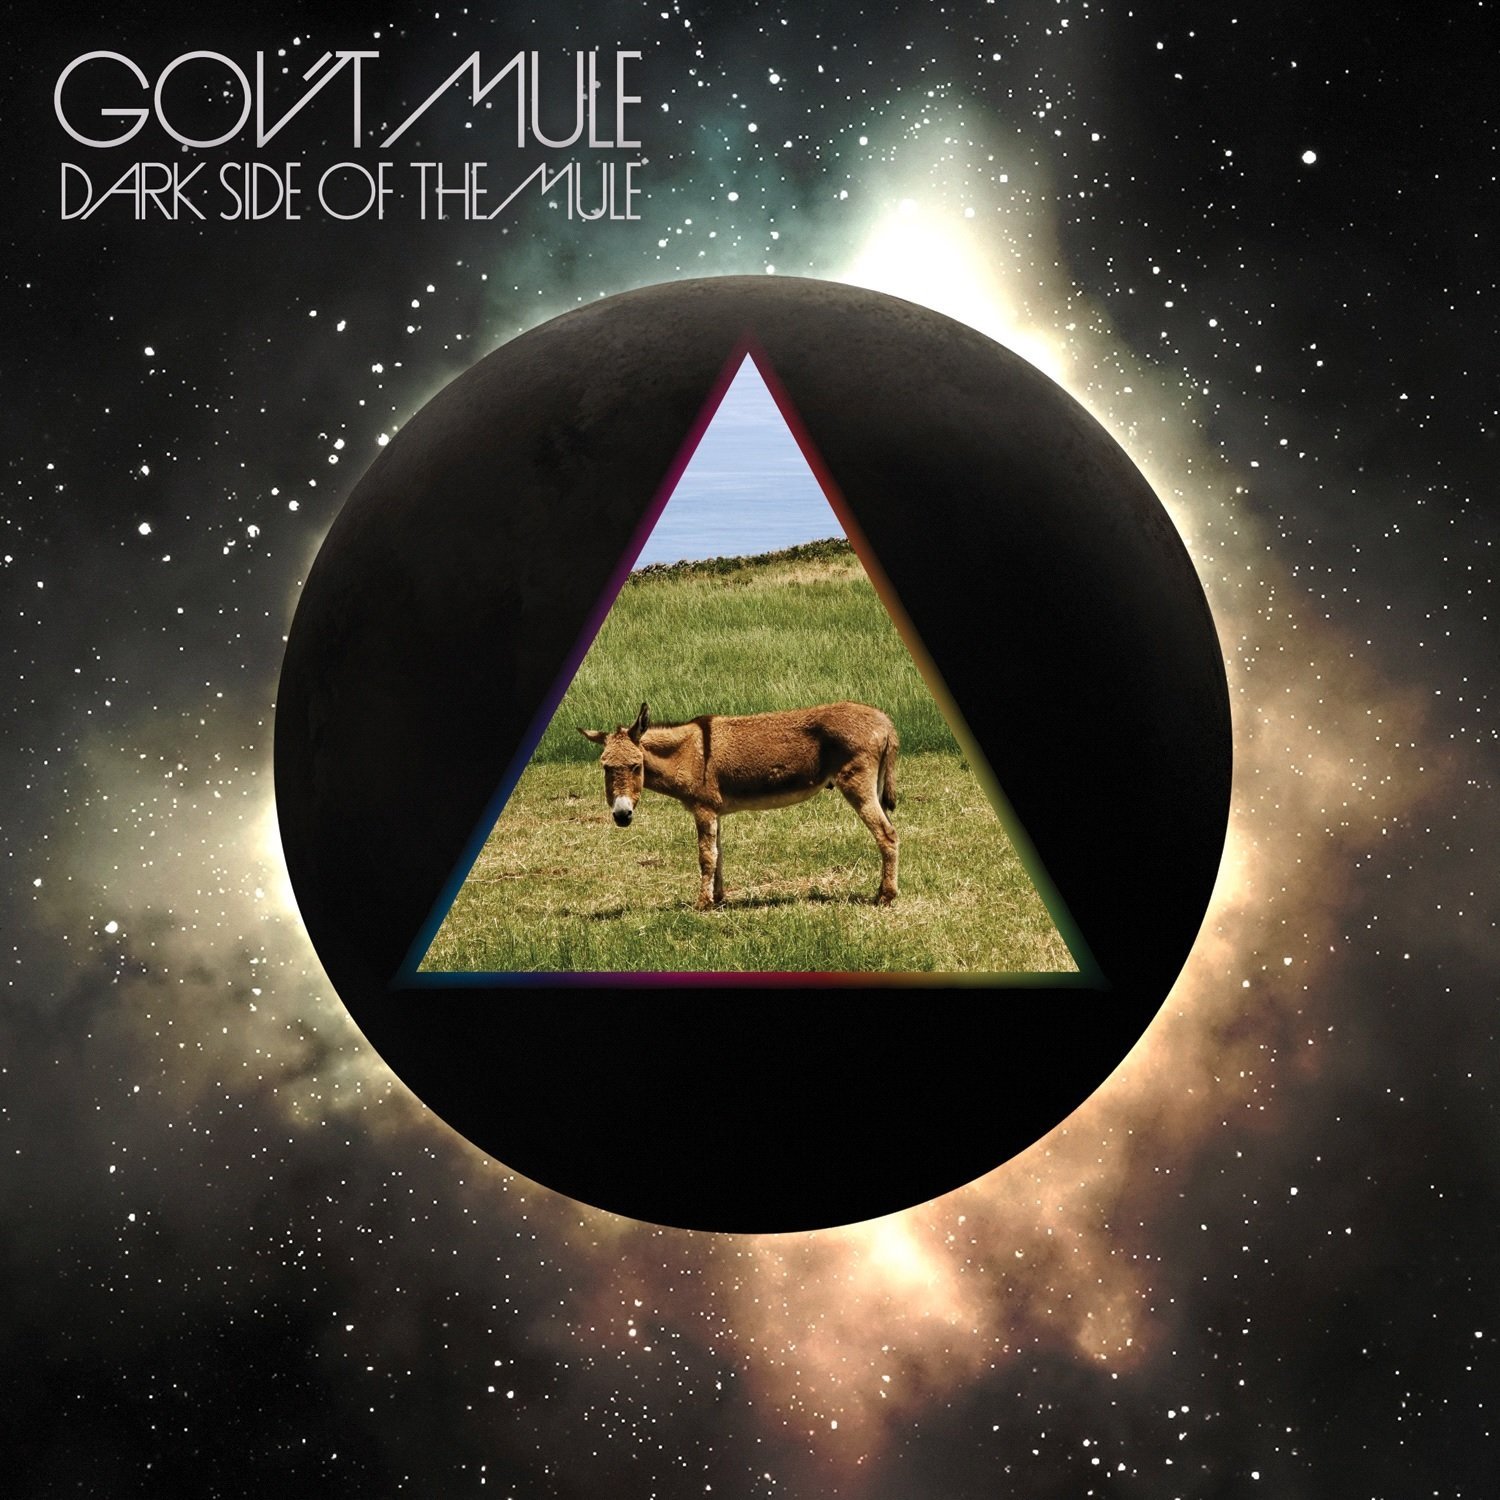 Gov't Mule - Dark Side of the Mule CD | Leeway's Home Grown Music Network